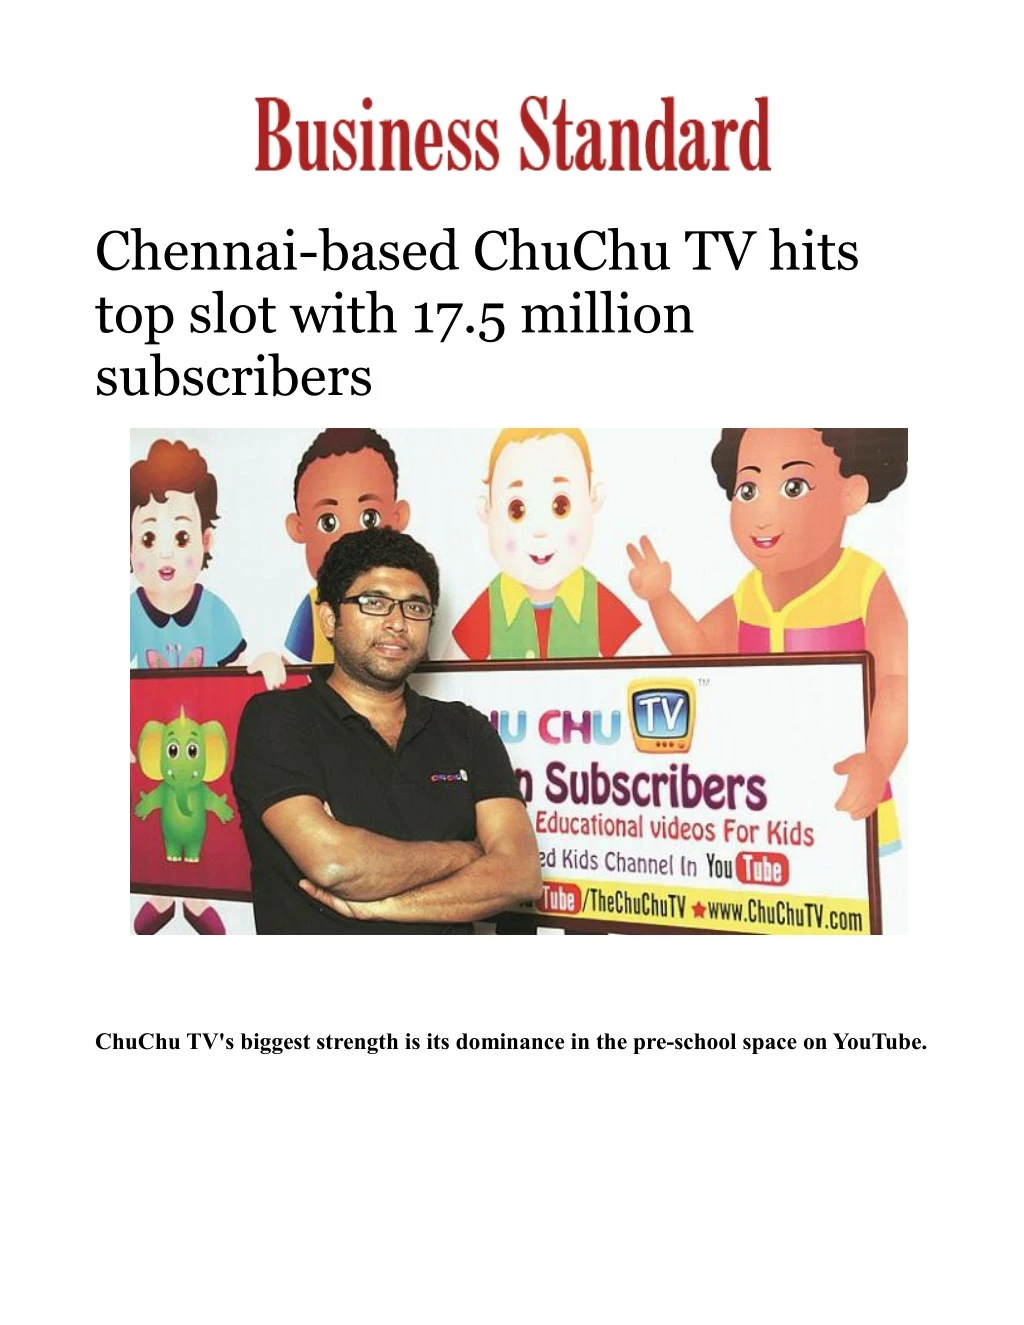 chennai based chuchu tv hits top slot with